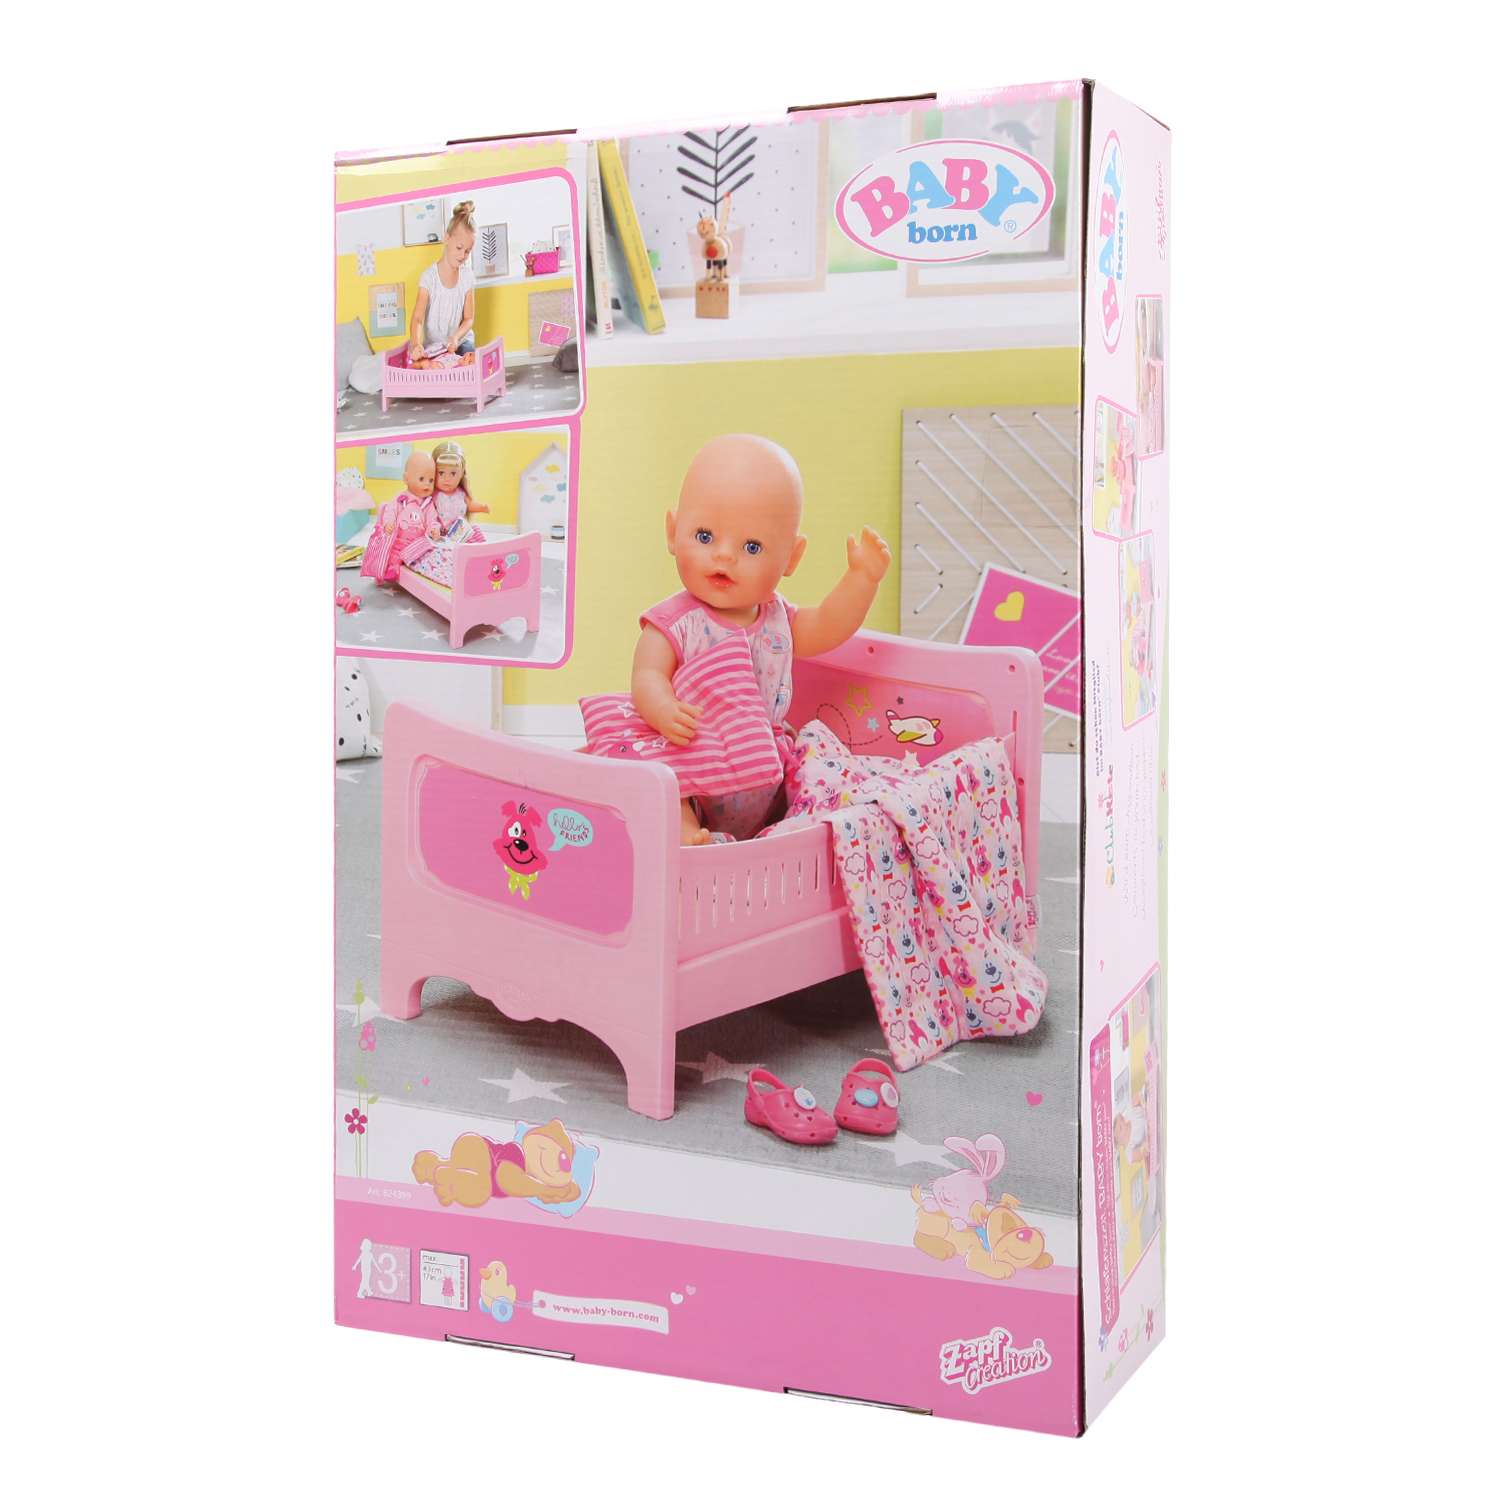 Набор для куклы Zapf Creation Baby Born кровать 824-399 824-399 - фото 2